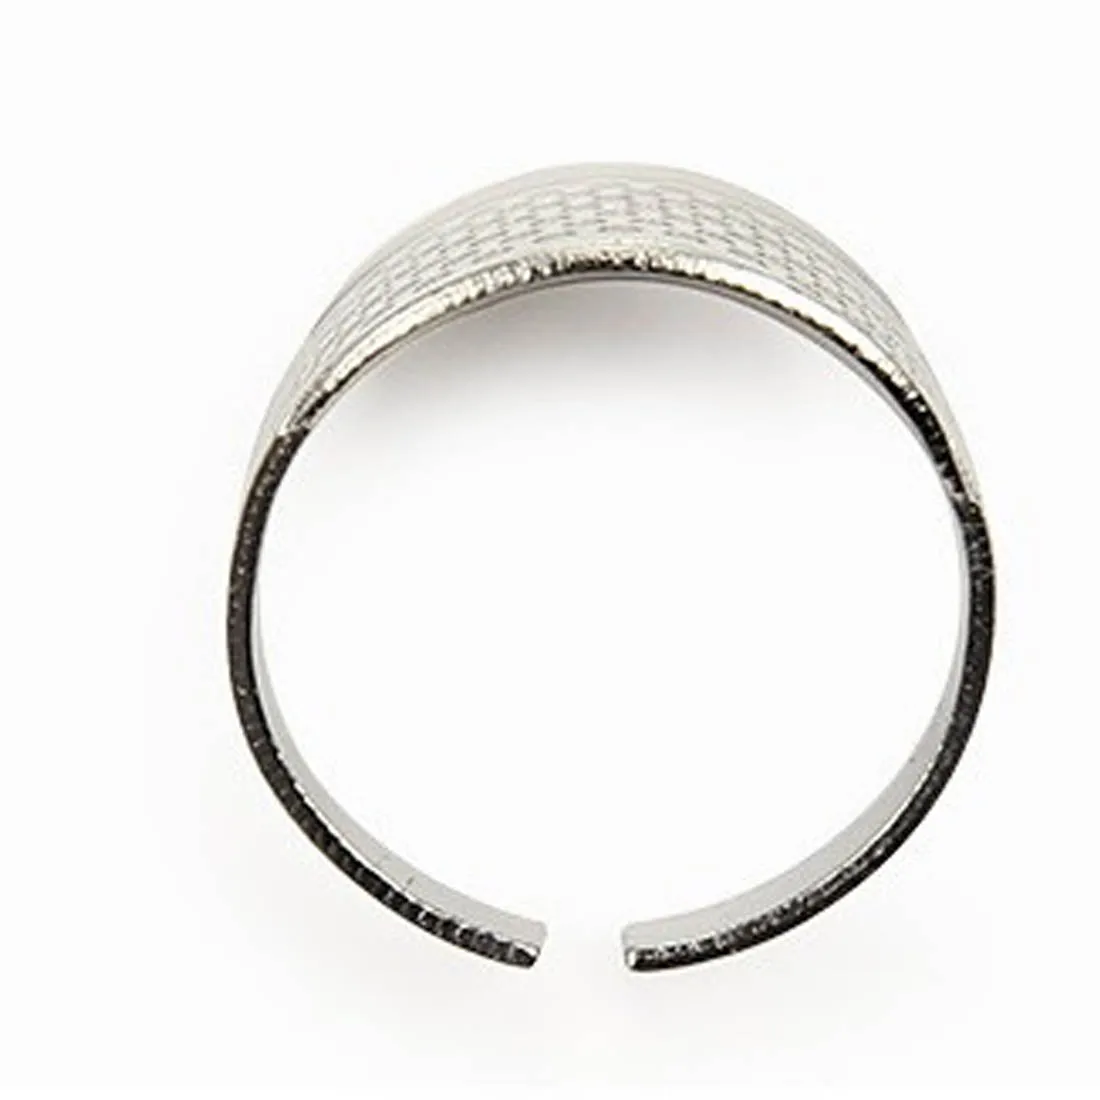 Новые 2 шт. бытовые швейные принадлежности для рукоделия серебряное кольцо напёрсток протектор домашнее шитье ремесло аксессуары